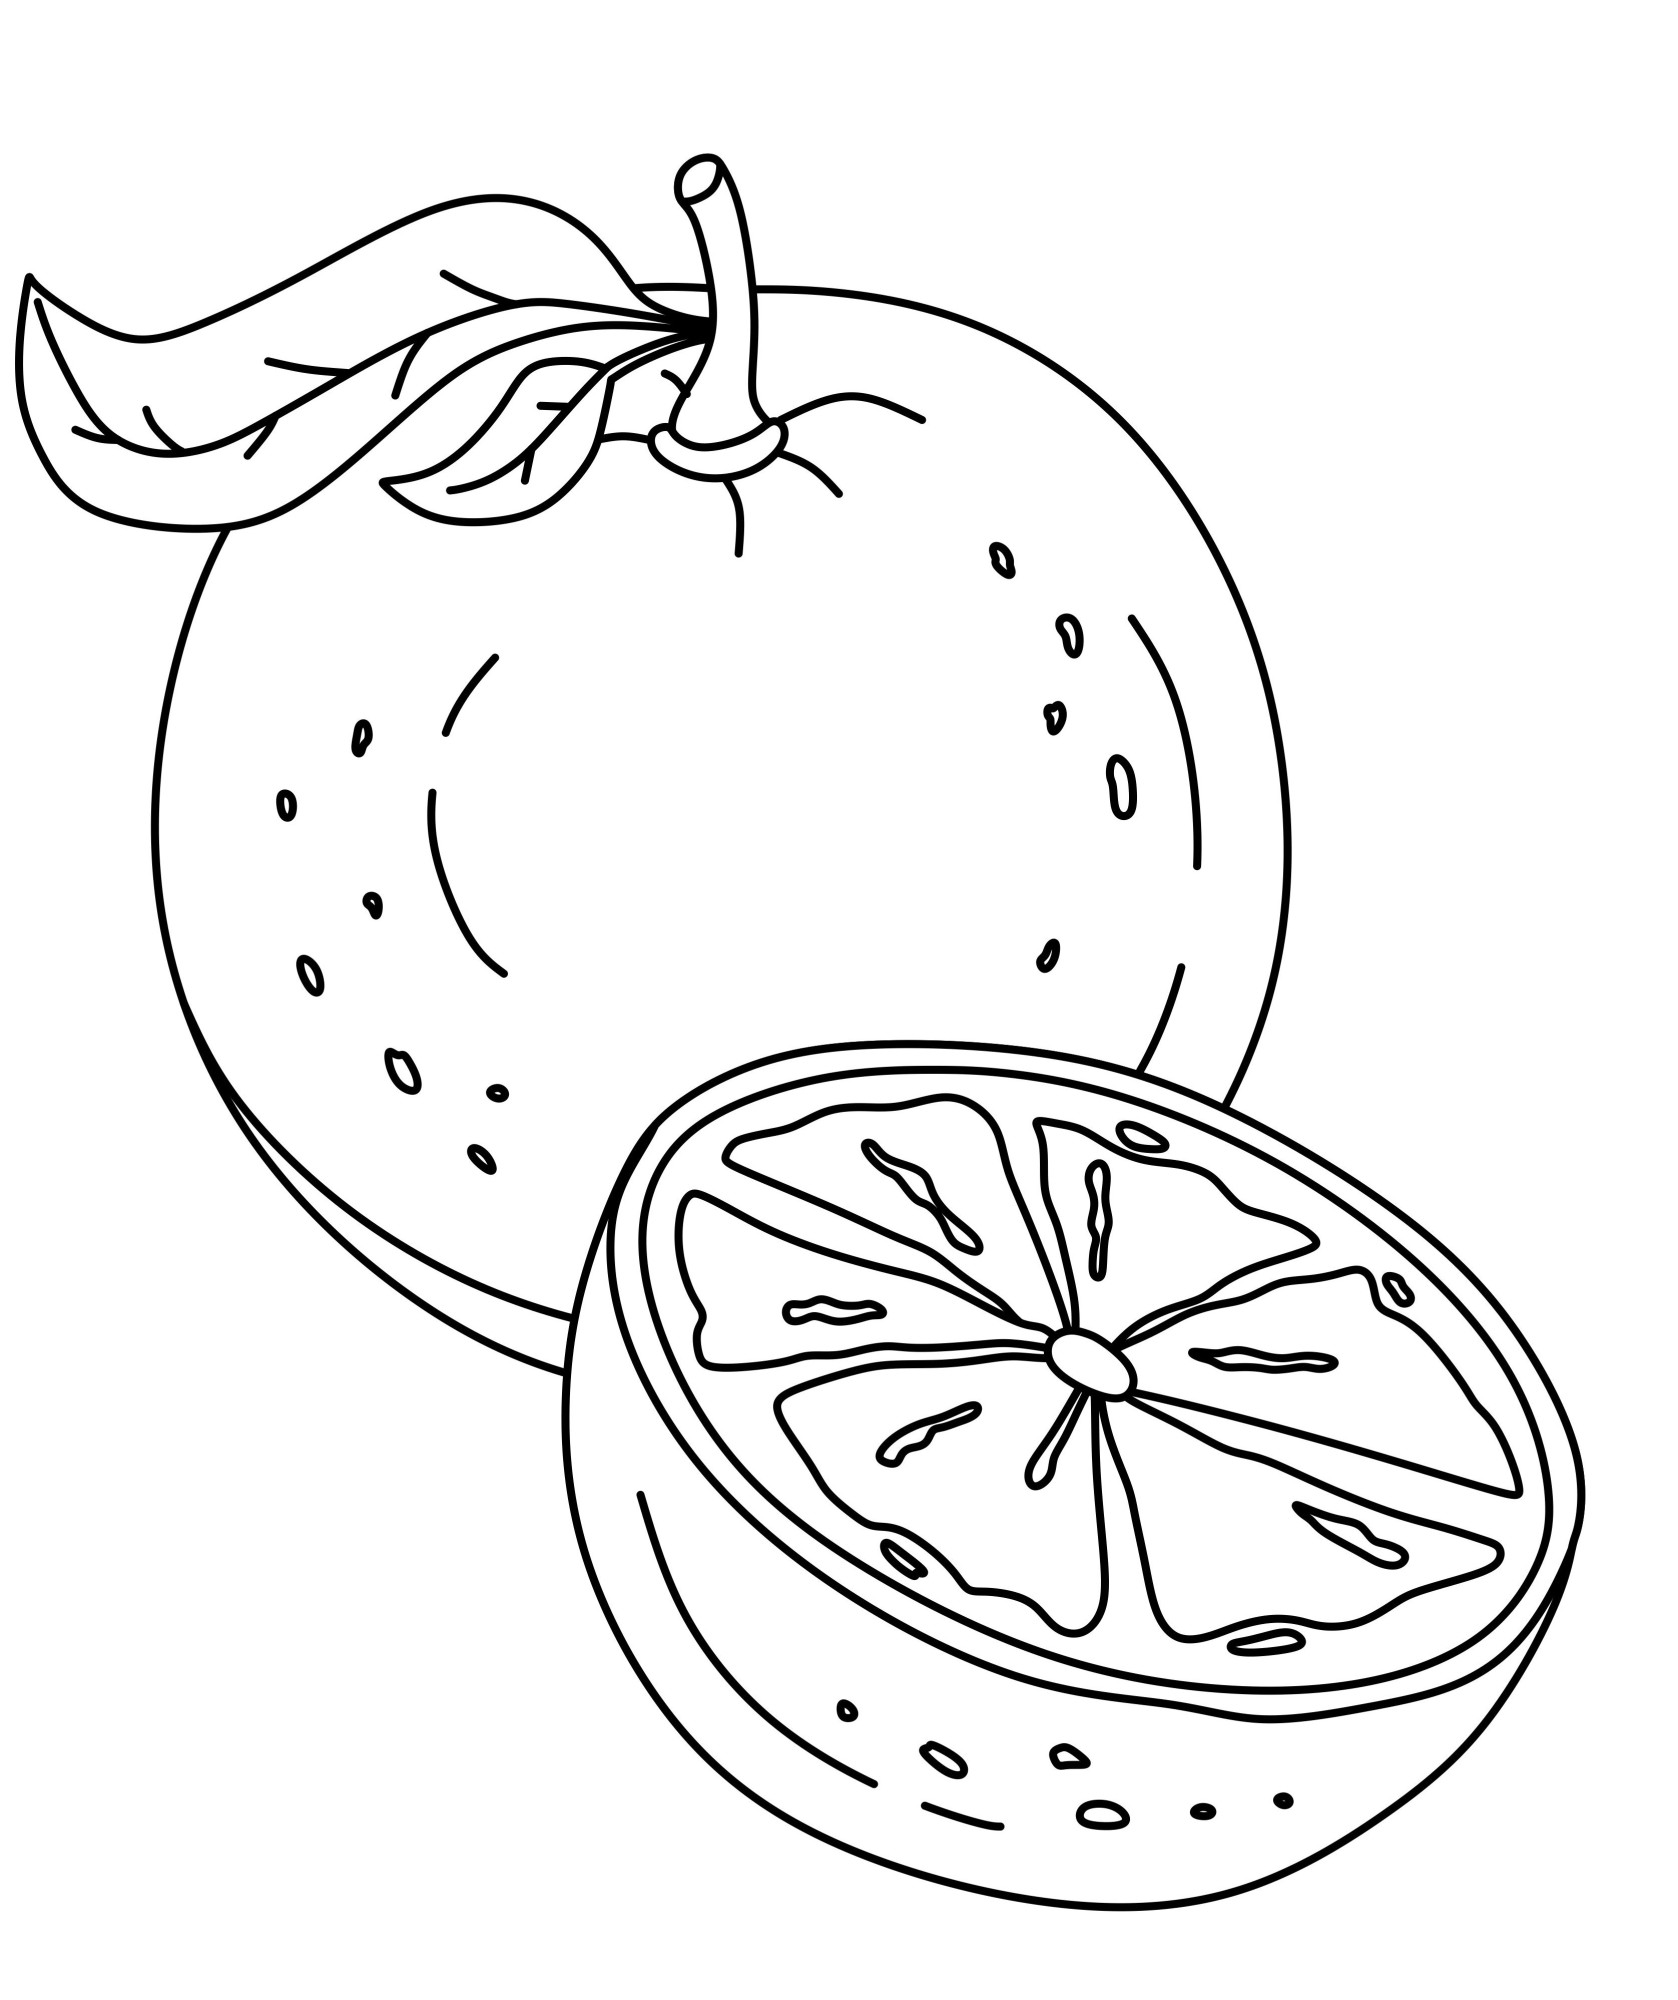 Раскраска для детей: круглый апельсин с половинкой